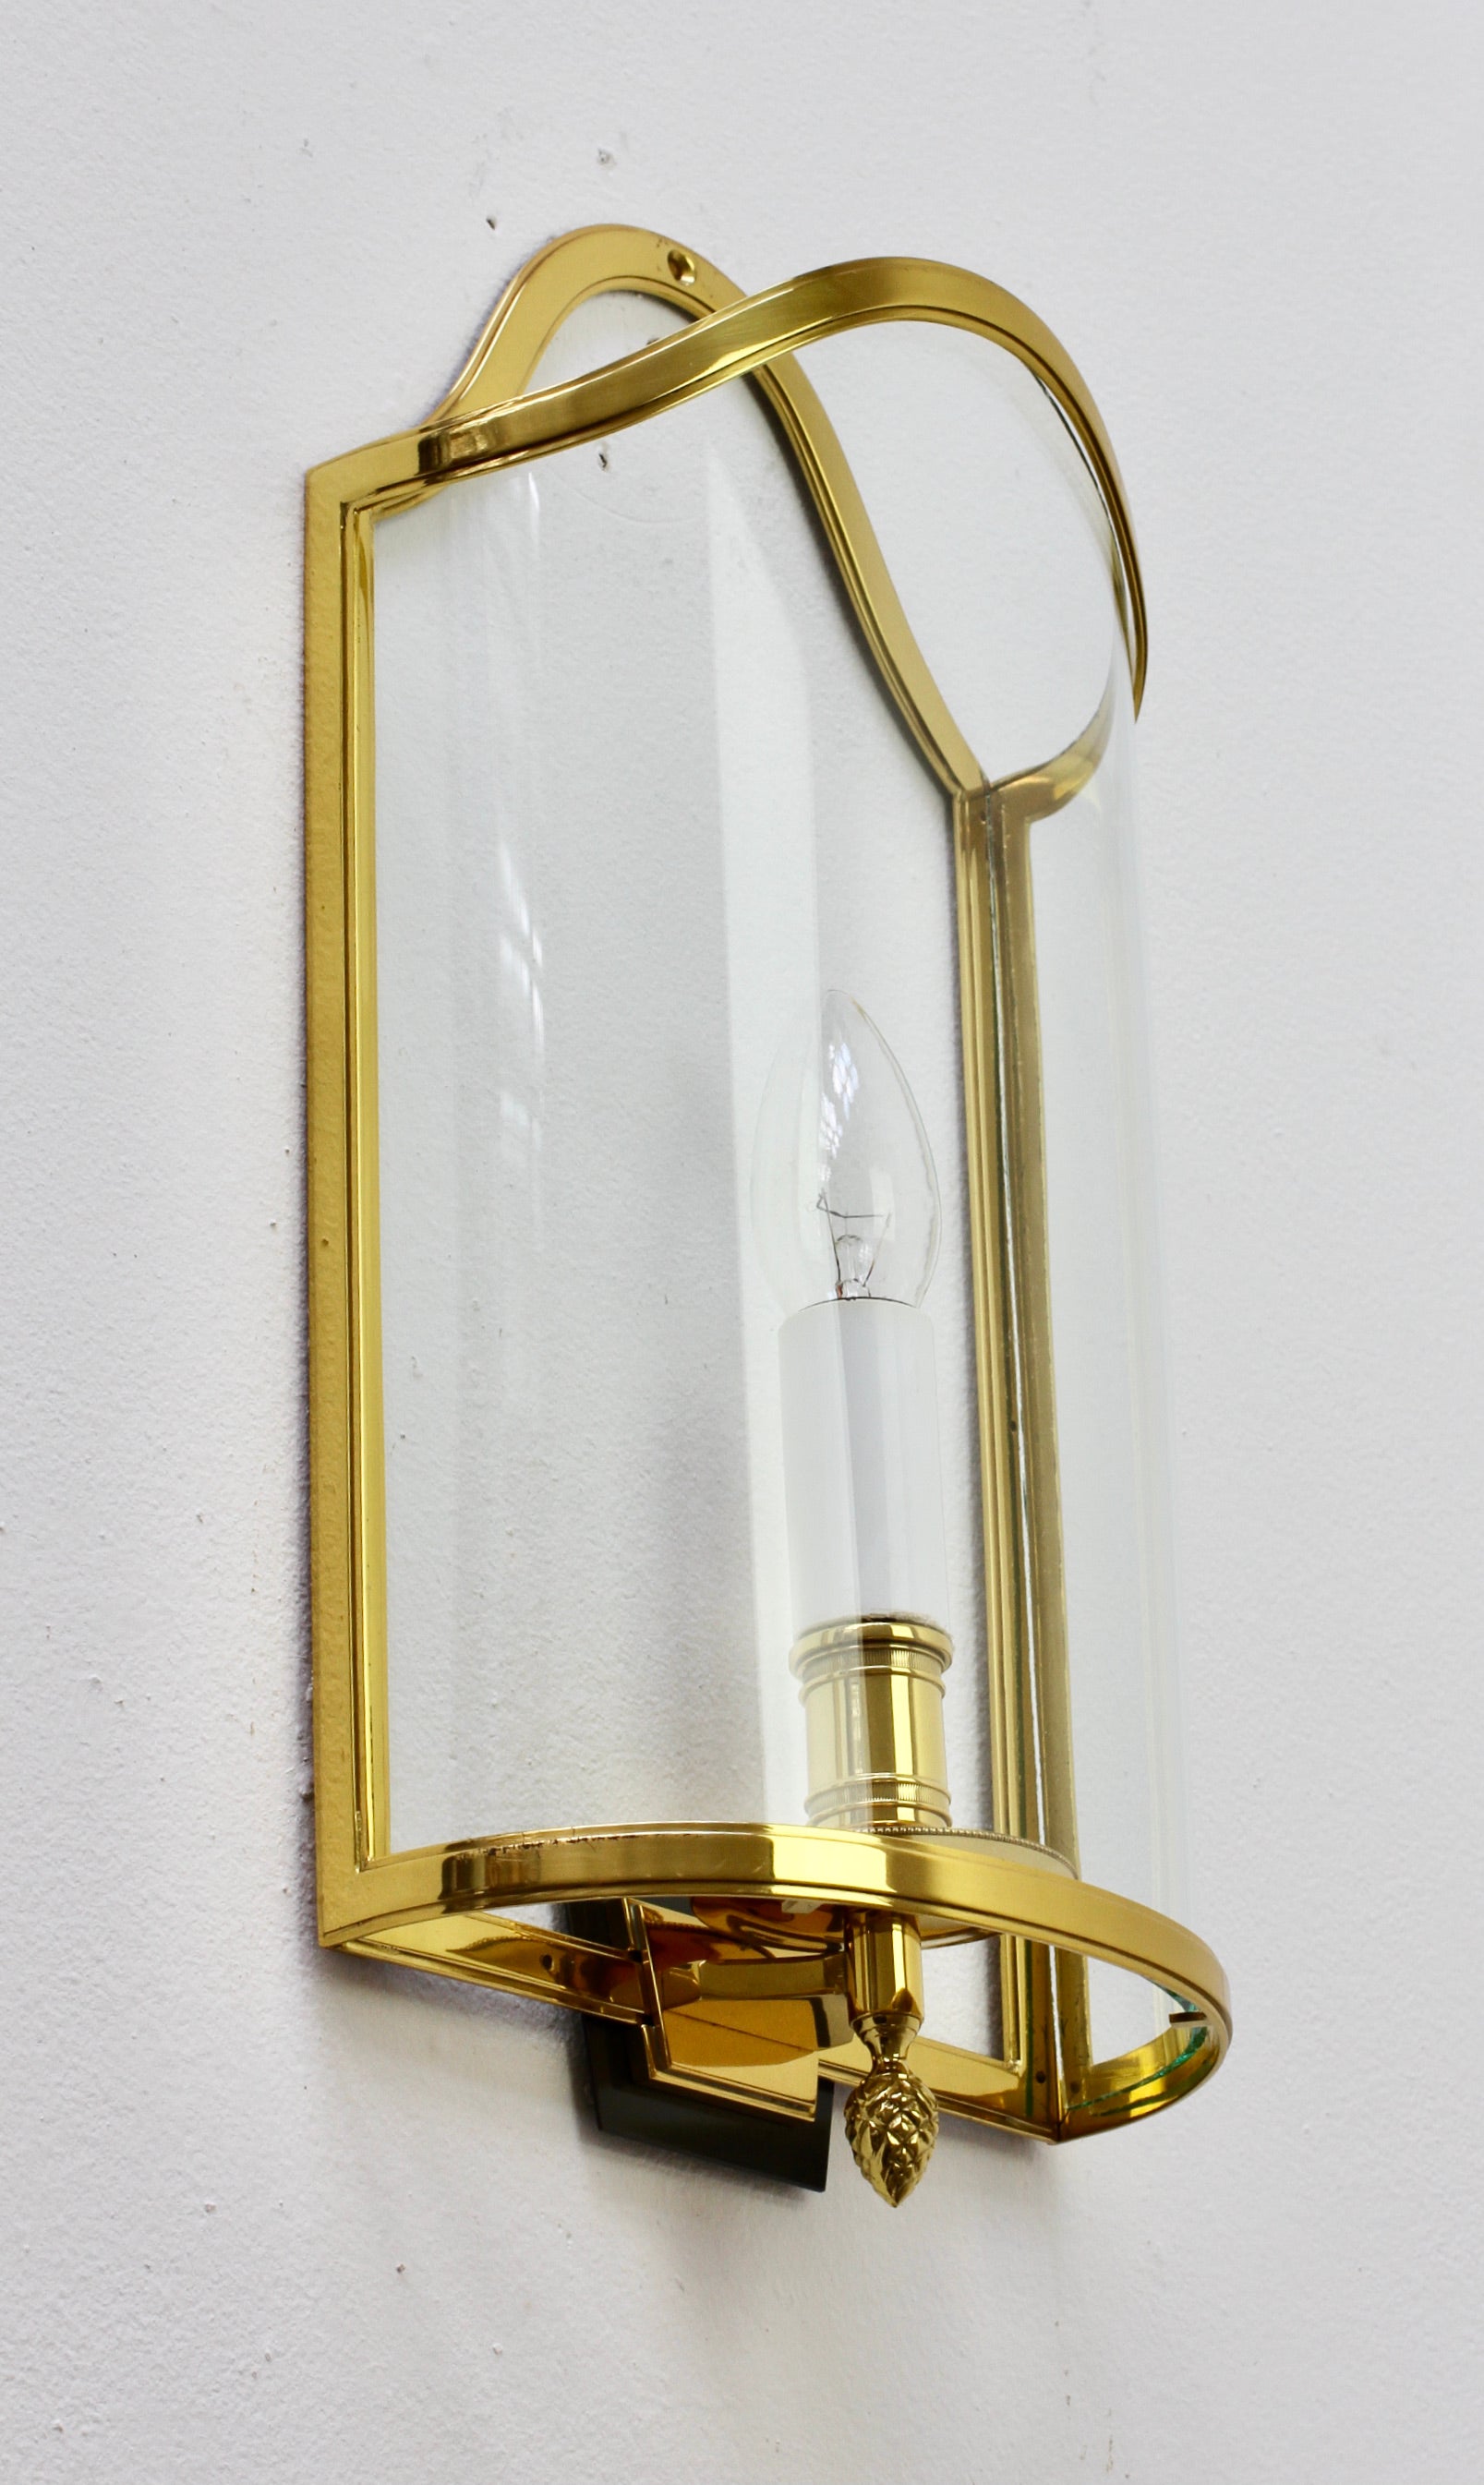 1 of 5 Maison Jansen Style Polished Brass Sconces by Vereinigte Werkstätten